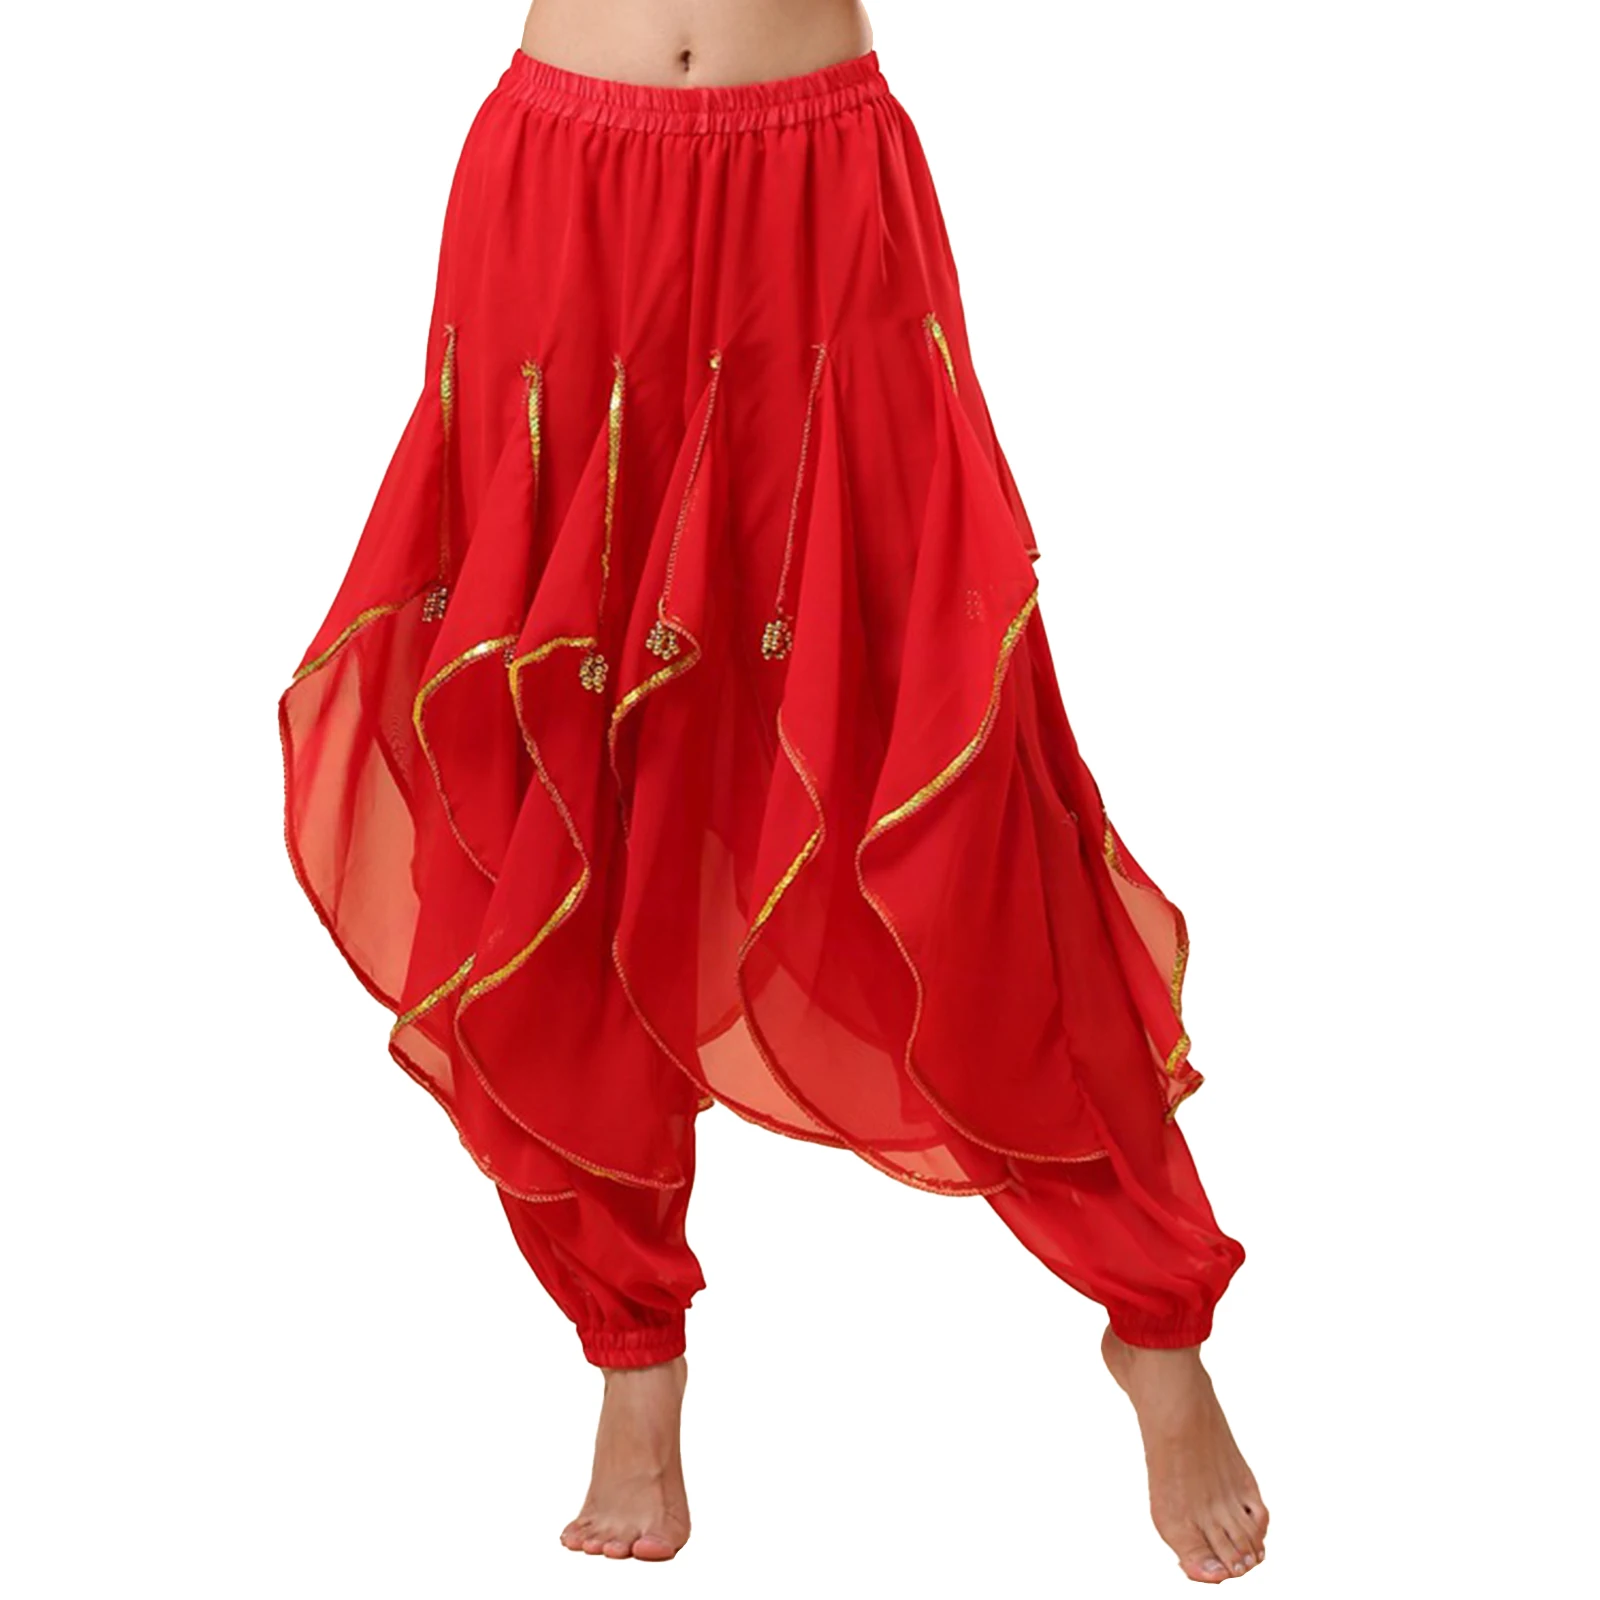 נשים מזרחיות הודו ריקודי בטן ביצועים תחפושת נצנצים Trim מכנסי גומי אלסטי קפלים מכנסיים עם חרוזי פלסטיק - 1